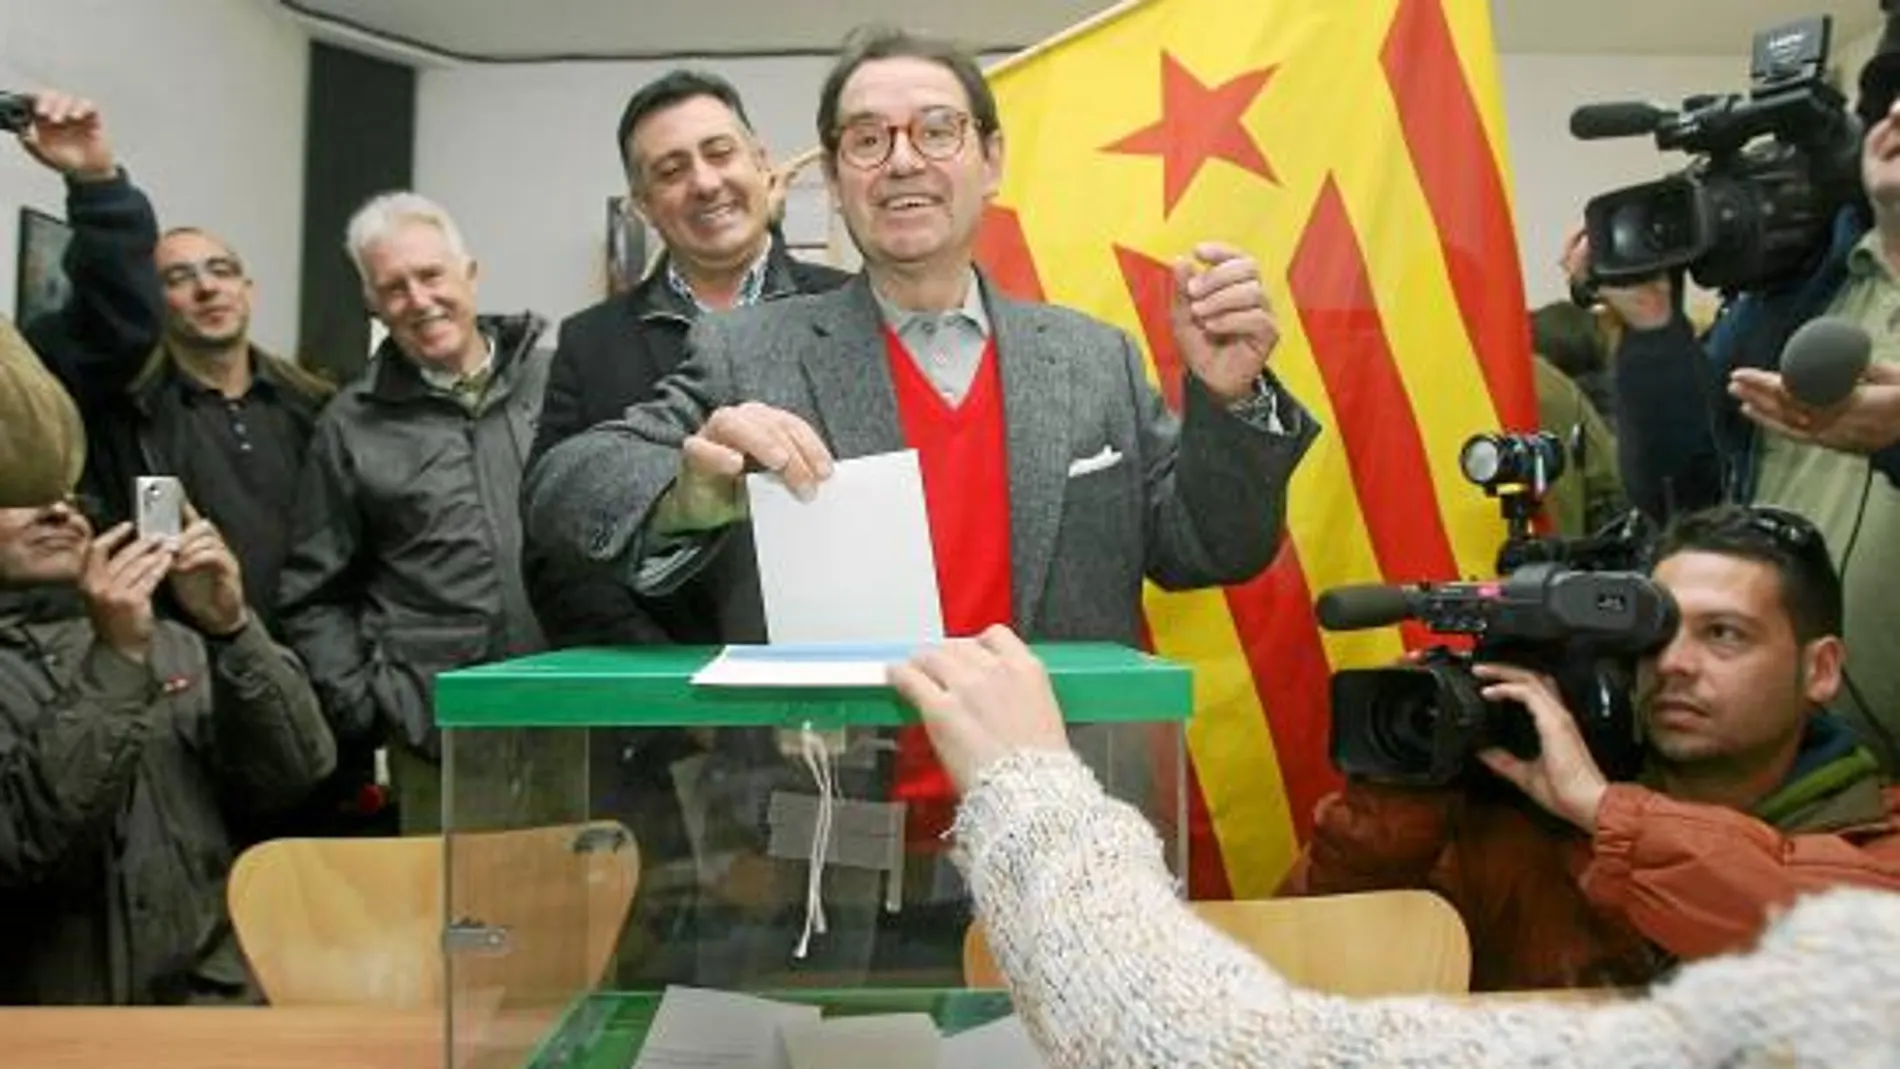 Puigcercós ya apoyó con entusiasmo el proceso de consultas soberanistas en muchos municipios catalanes